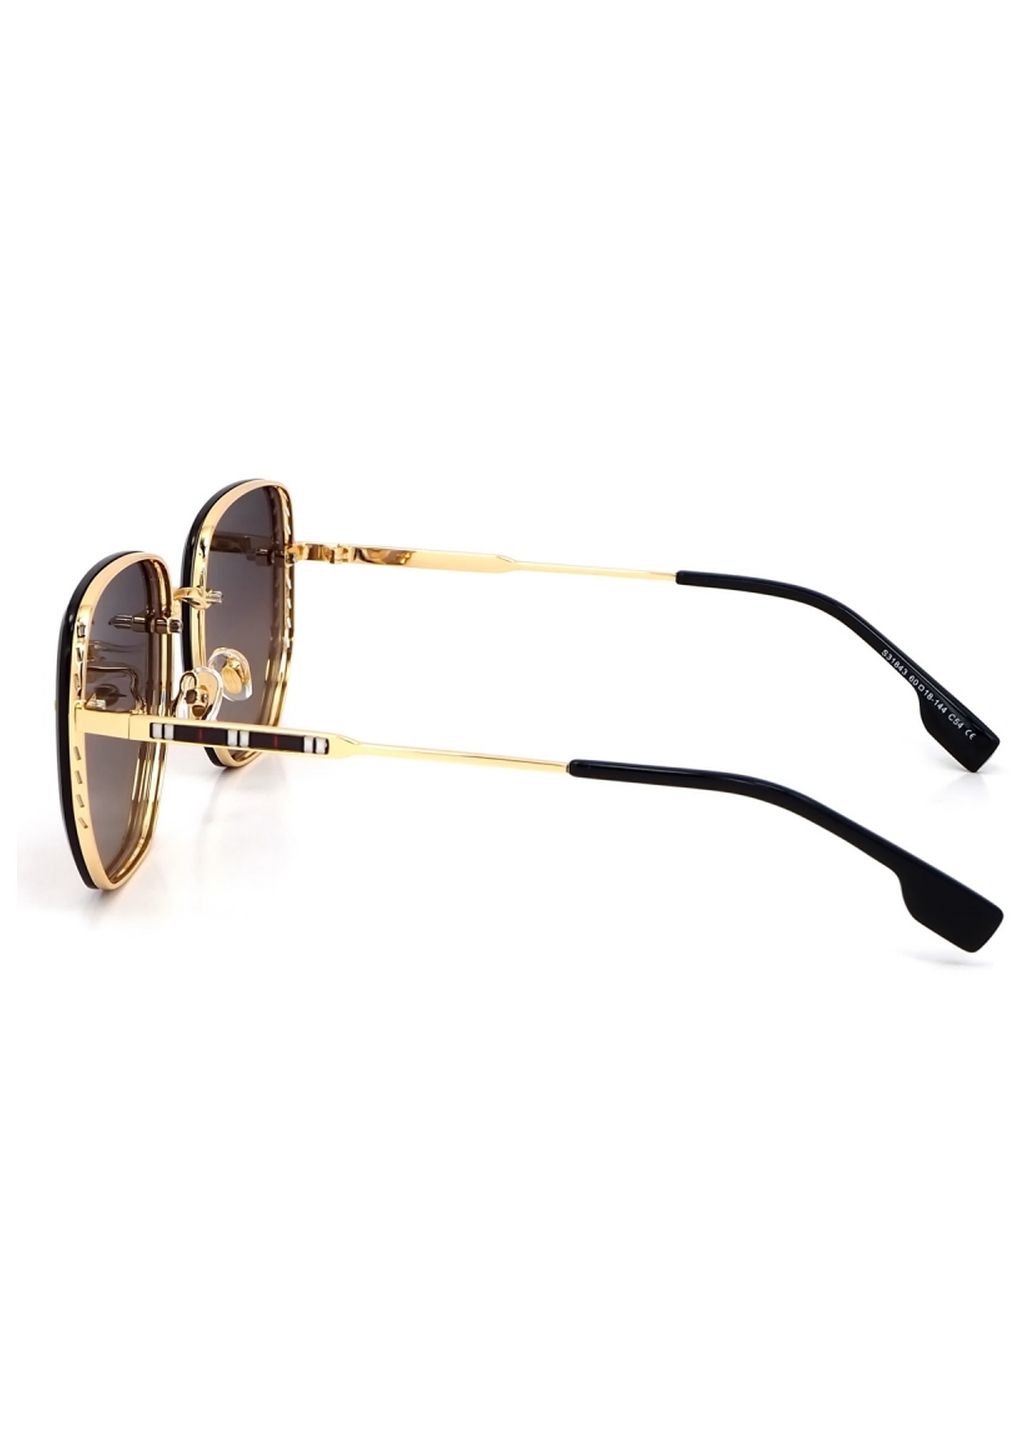 Купить Женские солнцезащитные очки Merlini с поляризацией S31843 117129 - Золотистый в интернет-магазине